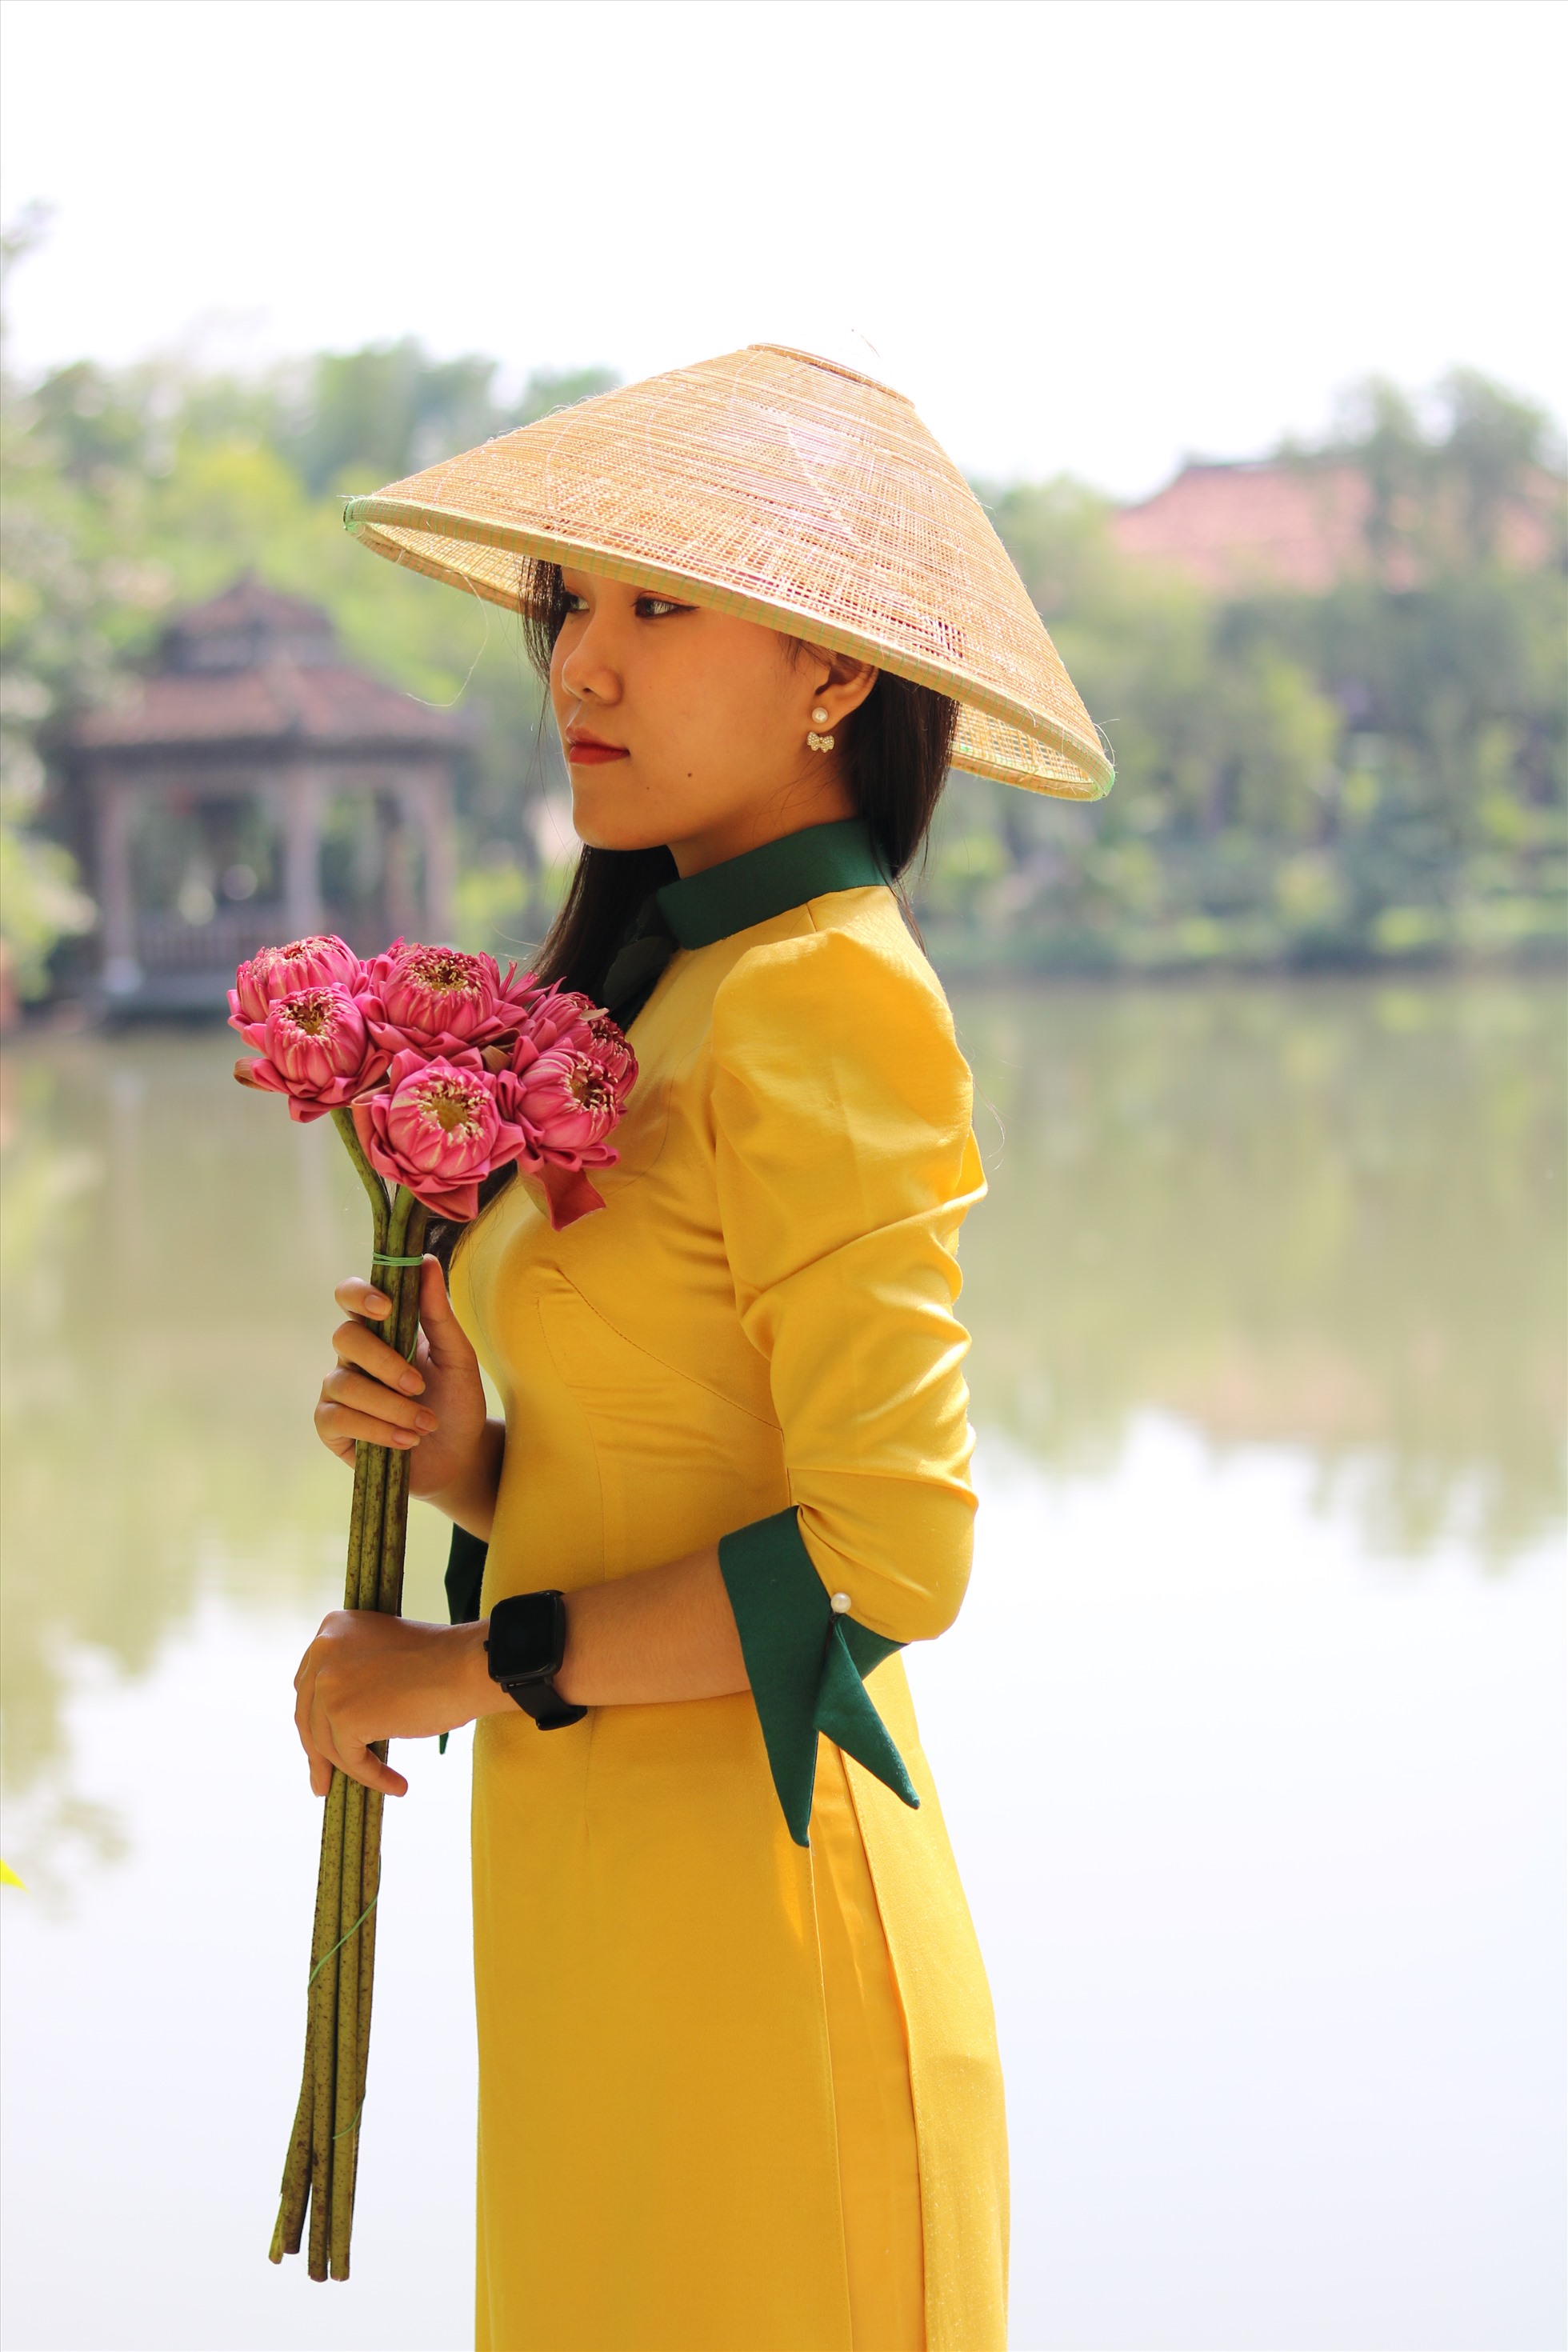 “Chúng ta nên giữ lại và phát triển tà áo dài Việt Nam vì đó là nét đẹp truyền thống bao đời rồi. Theo mình thì trong dịp quan trọng các bạn nữ mặc áo dài sẽ đẹp hơn, tôn lên vóc dáng người phụ nữ Việt”, bạn Trung Kiên (19 tuổi) chia sẻ.